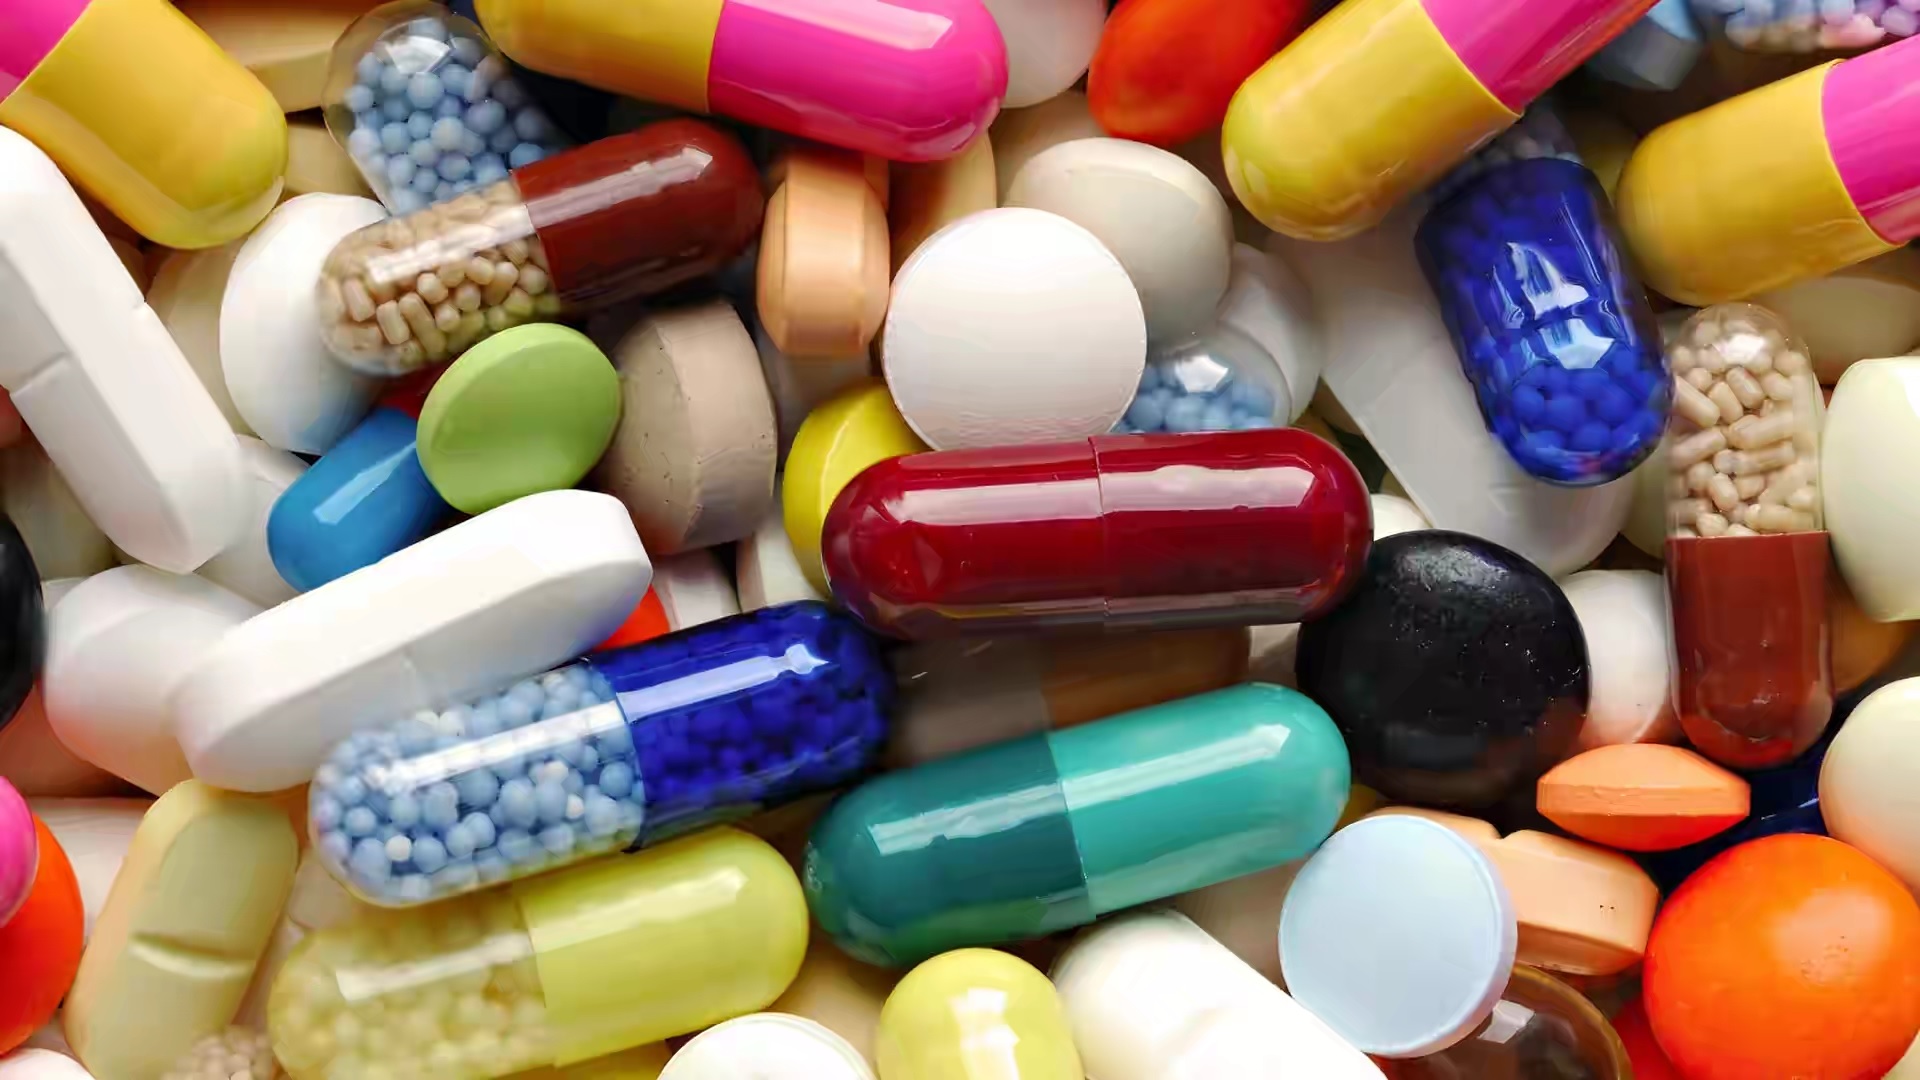 Χονδρικό εμπόριο φαρμάκων: Οι εταιρείες της Linnamäes κατέλαβαν τη μισή Εσθονική αγορά- Υποψίες για μονοπώλιο [vid]